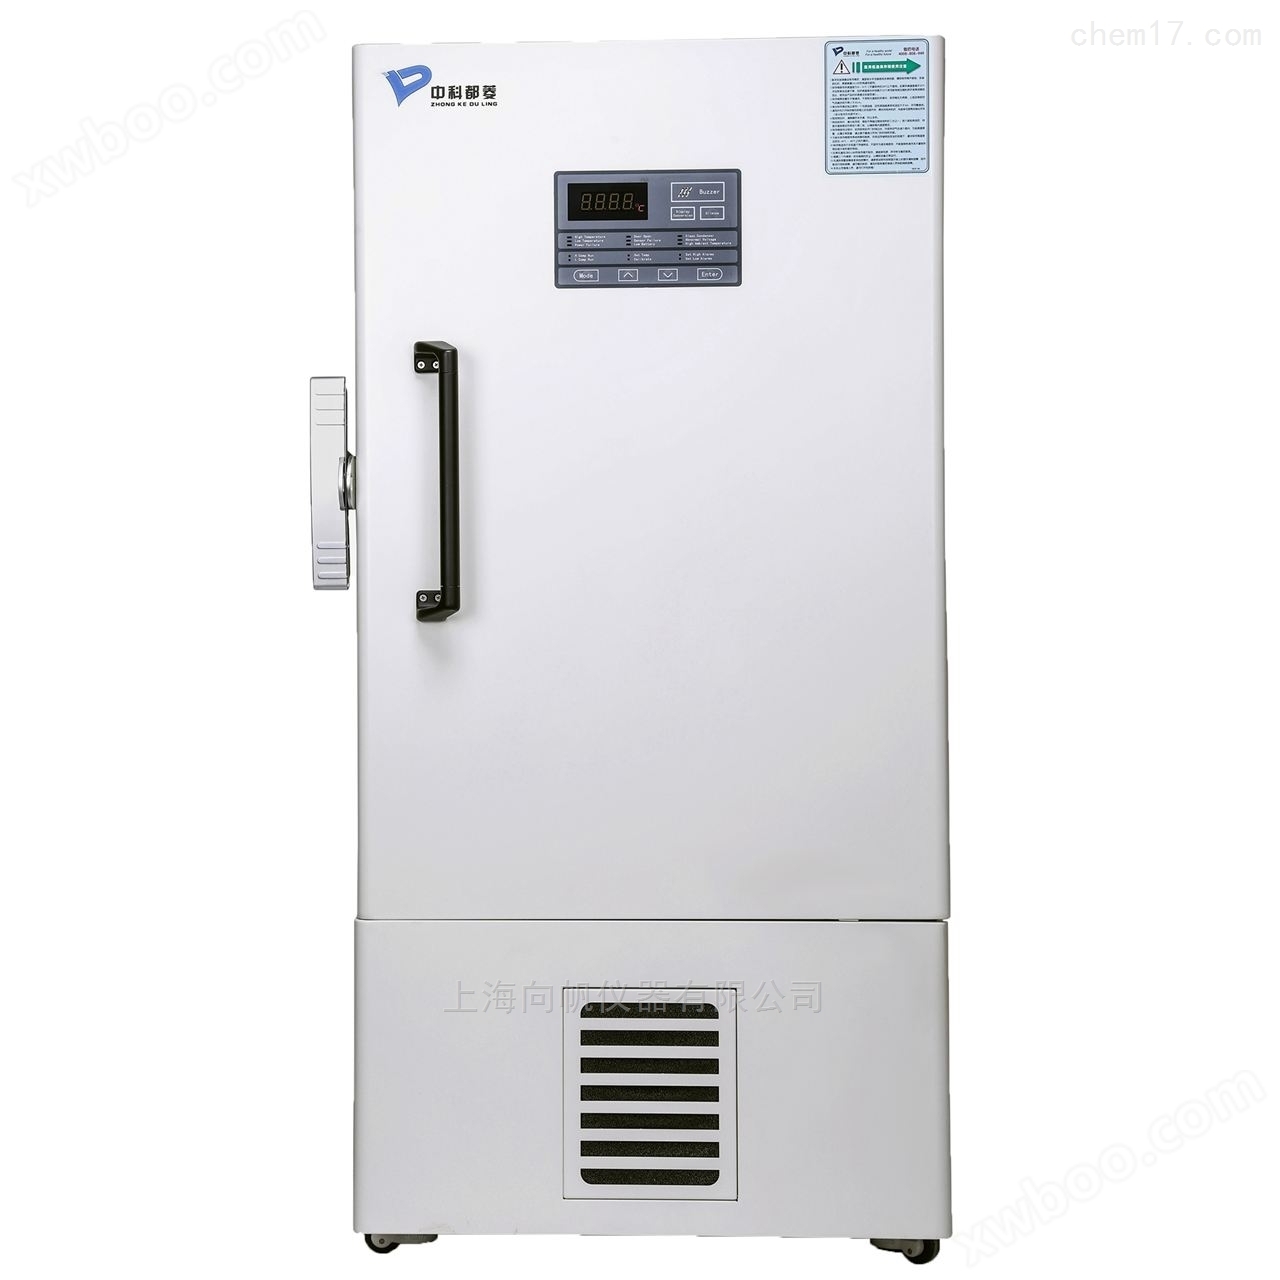 MDF-86V340E立式超低温冰箱